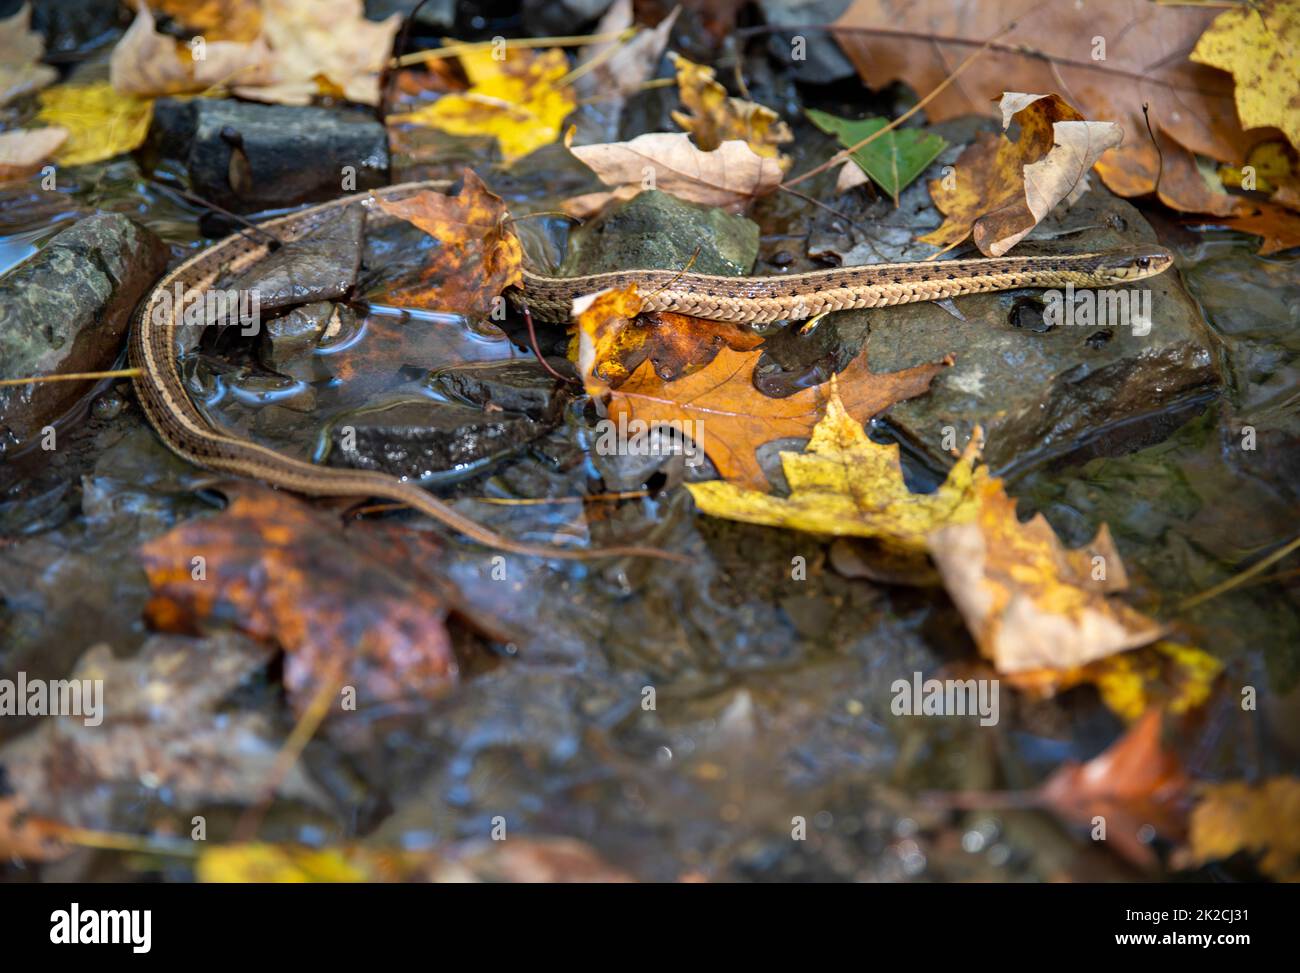 Closeup of a garter snake crossing an autumn forest stream Stock Photo